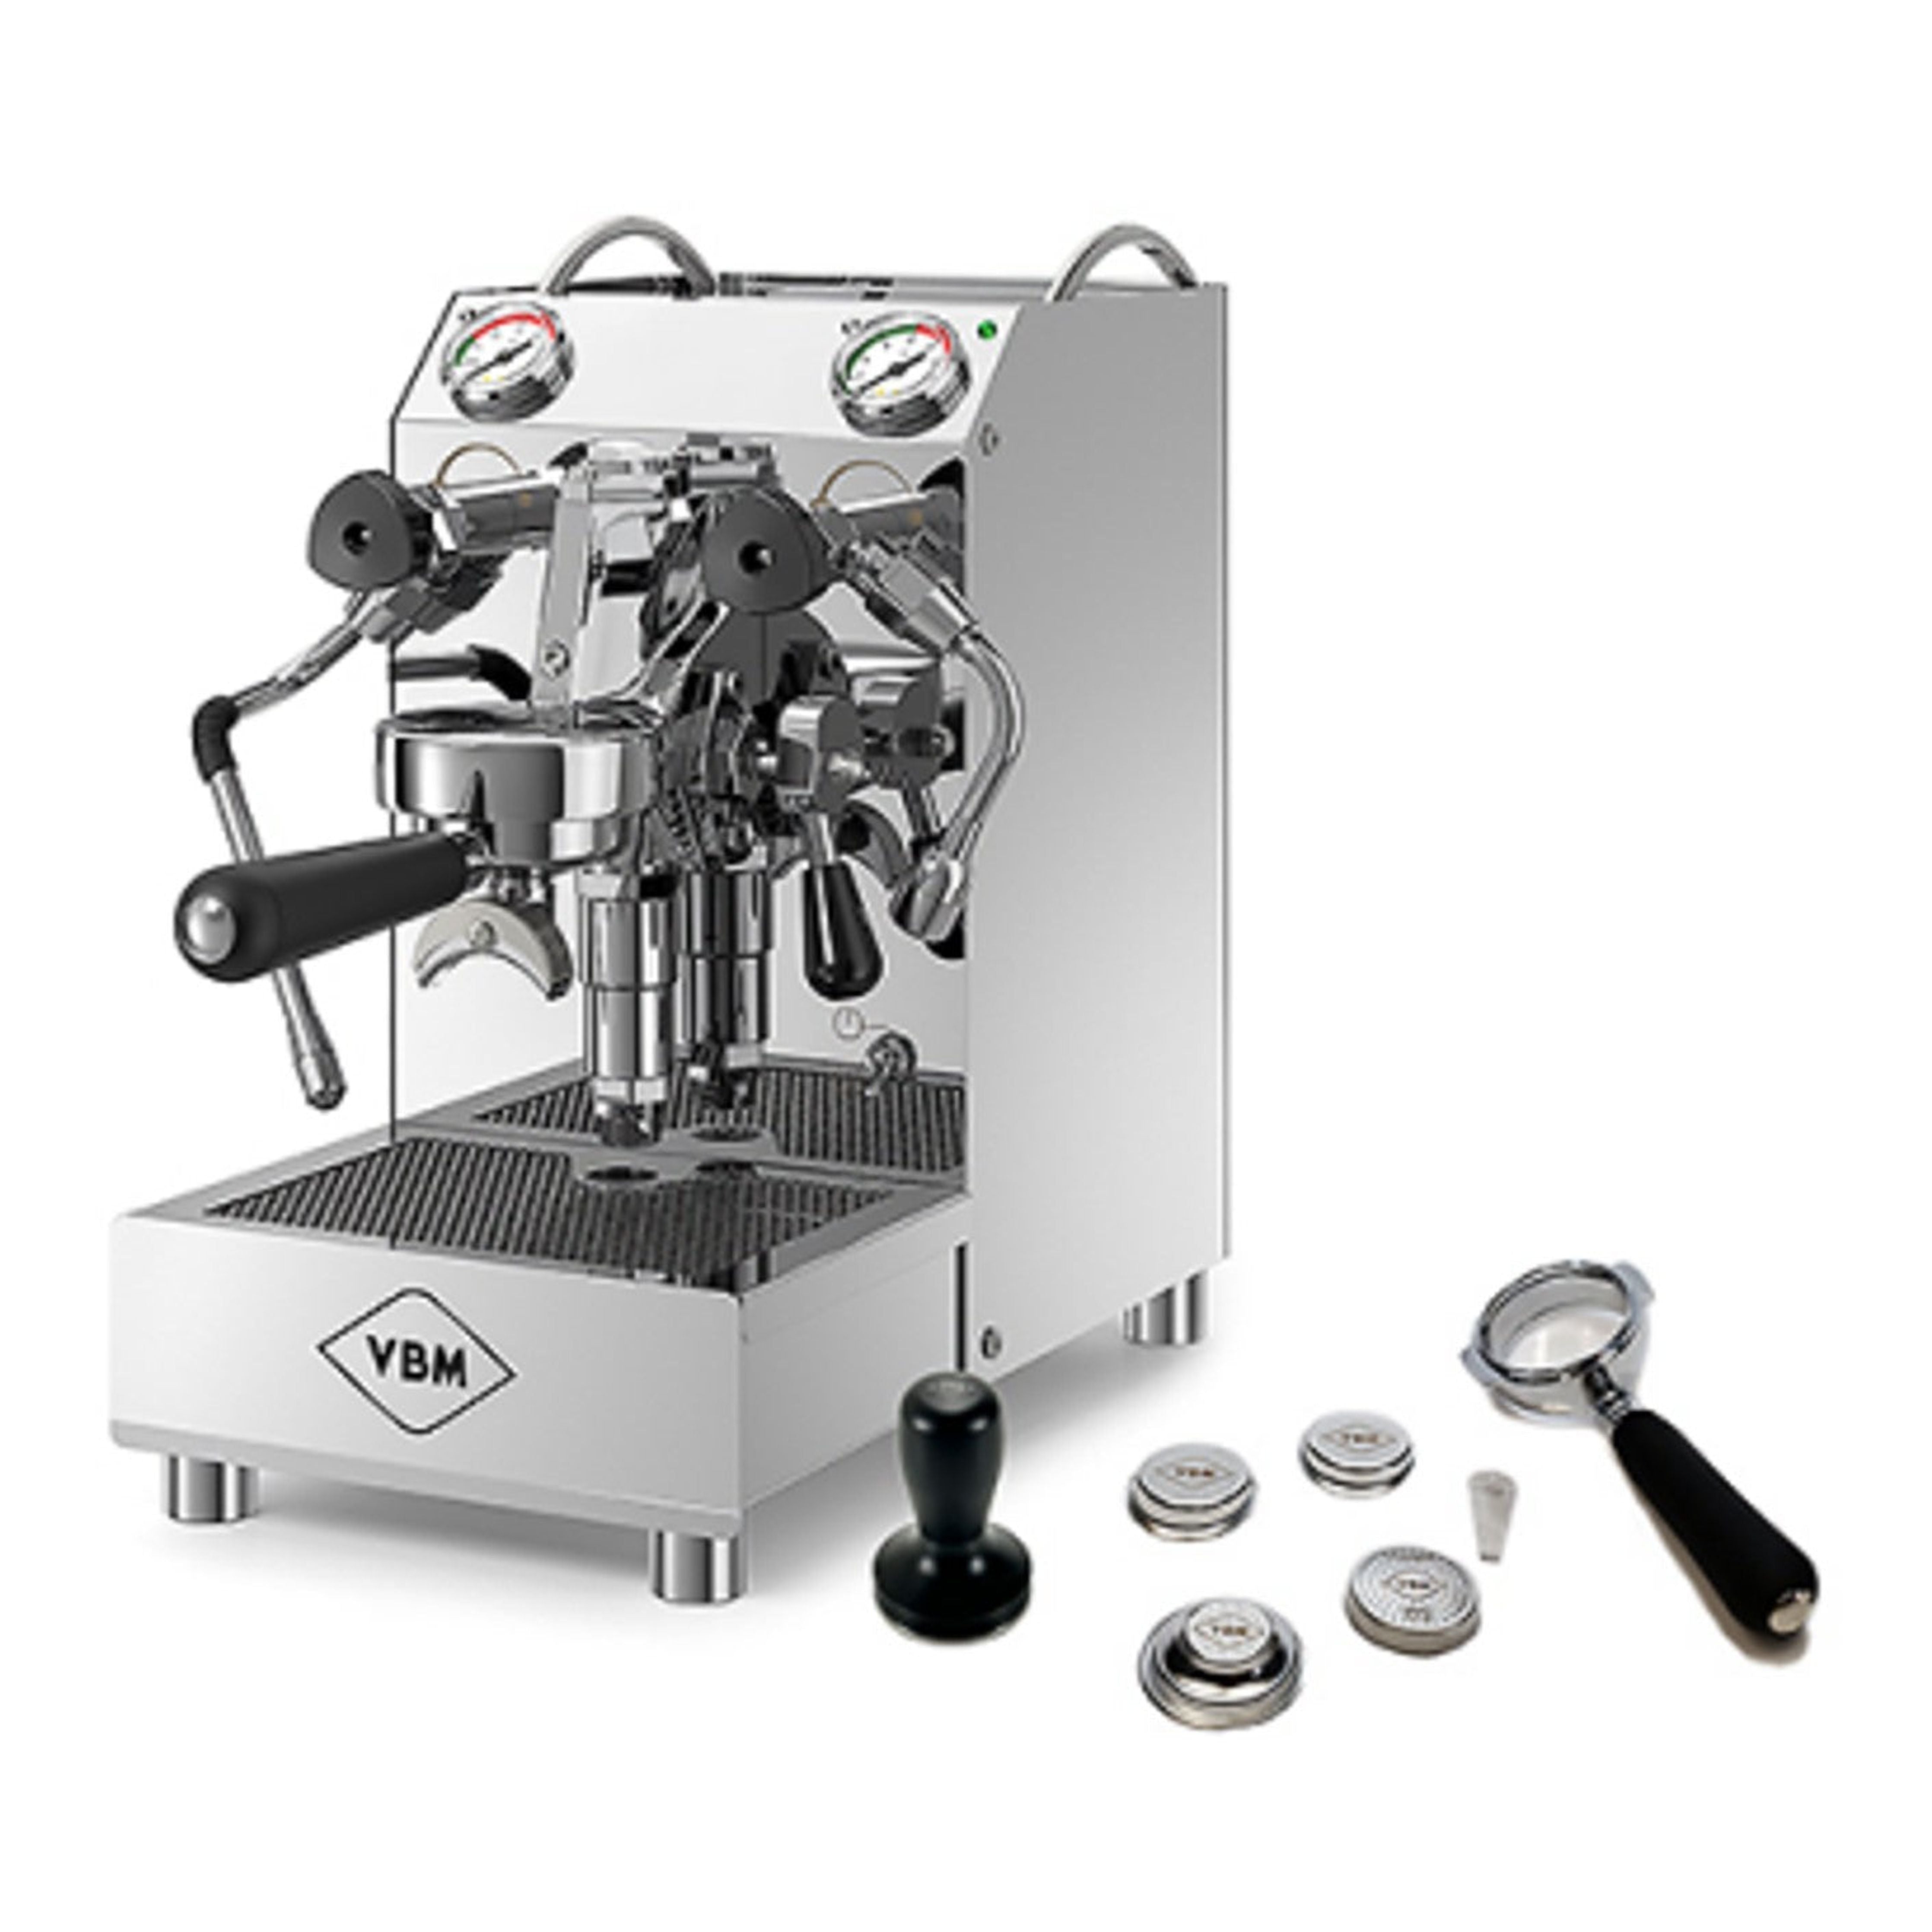 VBM DOMOBAR Classic Junior HX + GRATIS Tasting KIT + VBM Tamper - Zweikreiser Espressomaschinen VBM    - Rheinland.Coffee